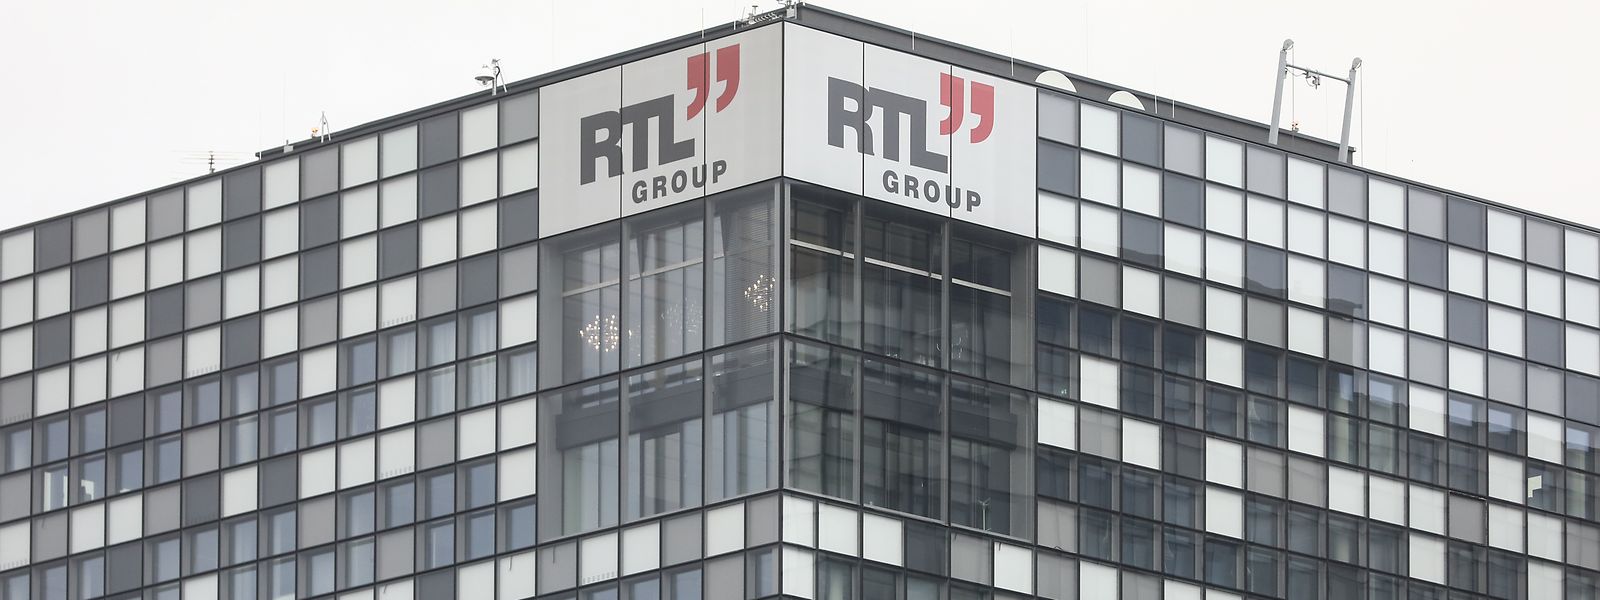 Malgré un chiffre d'affaires en baisse, RTL Group connaît une forte hausse des abonnements à ses plateformes de streaming